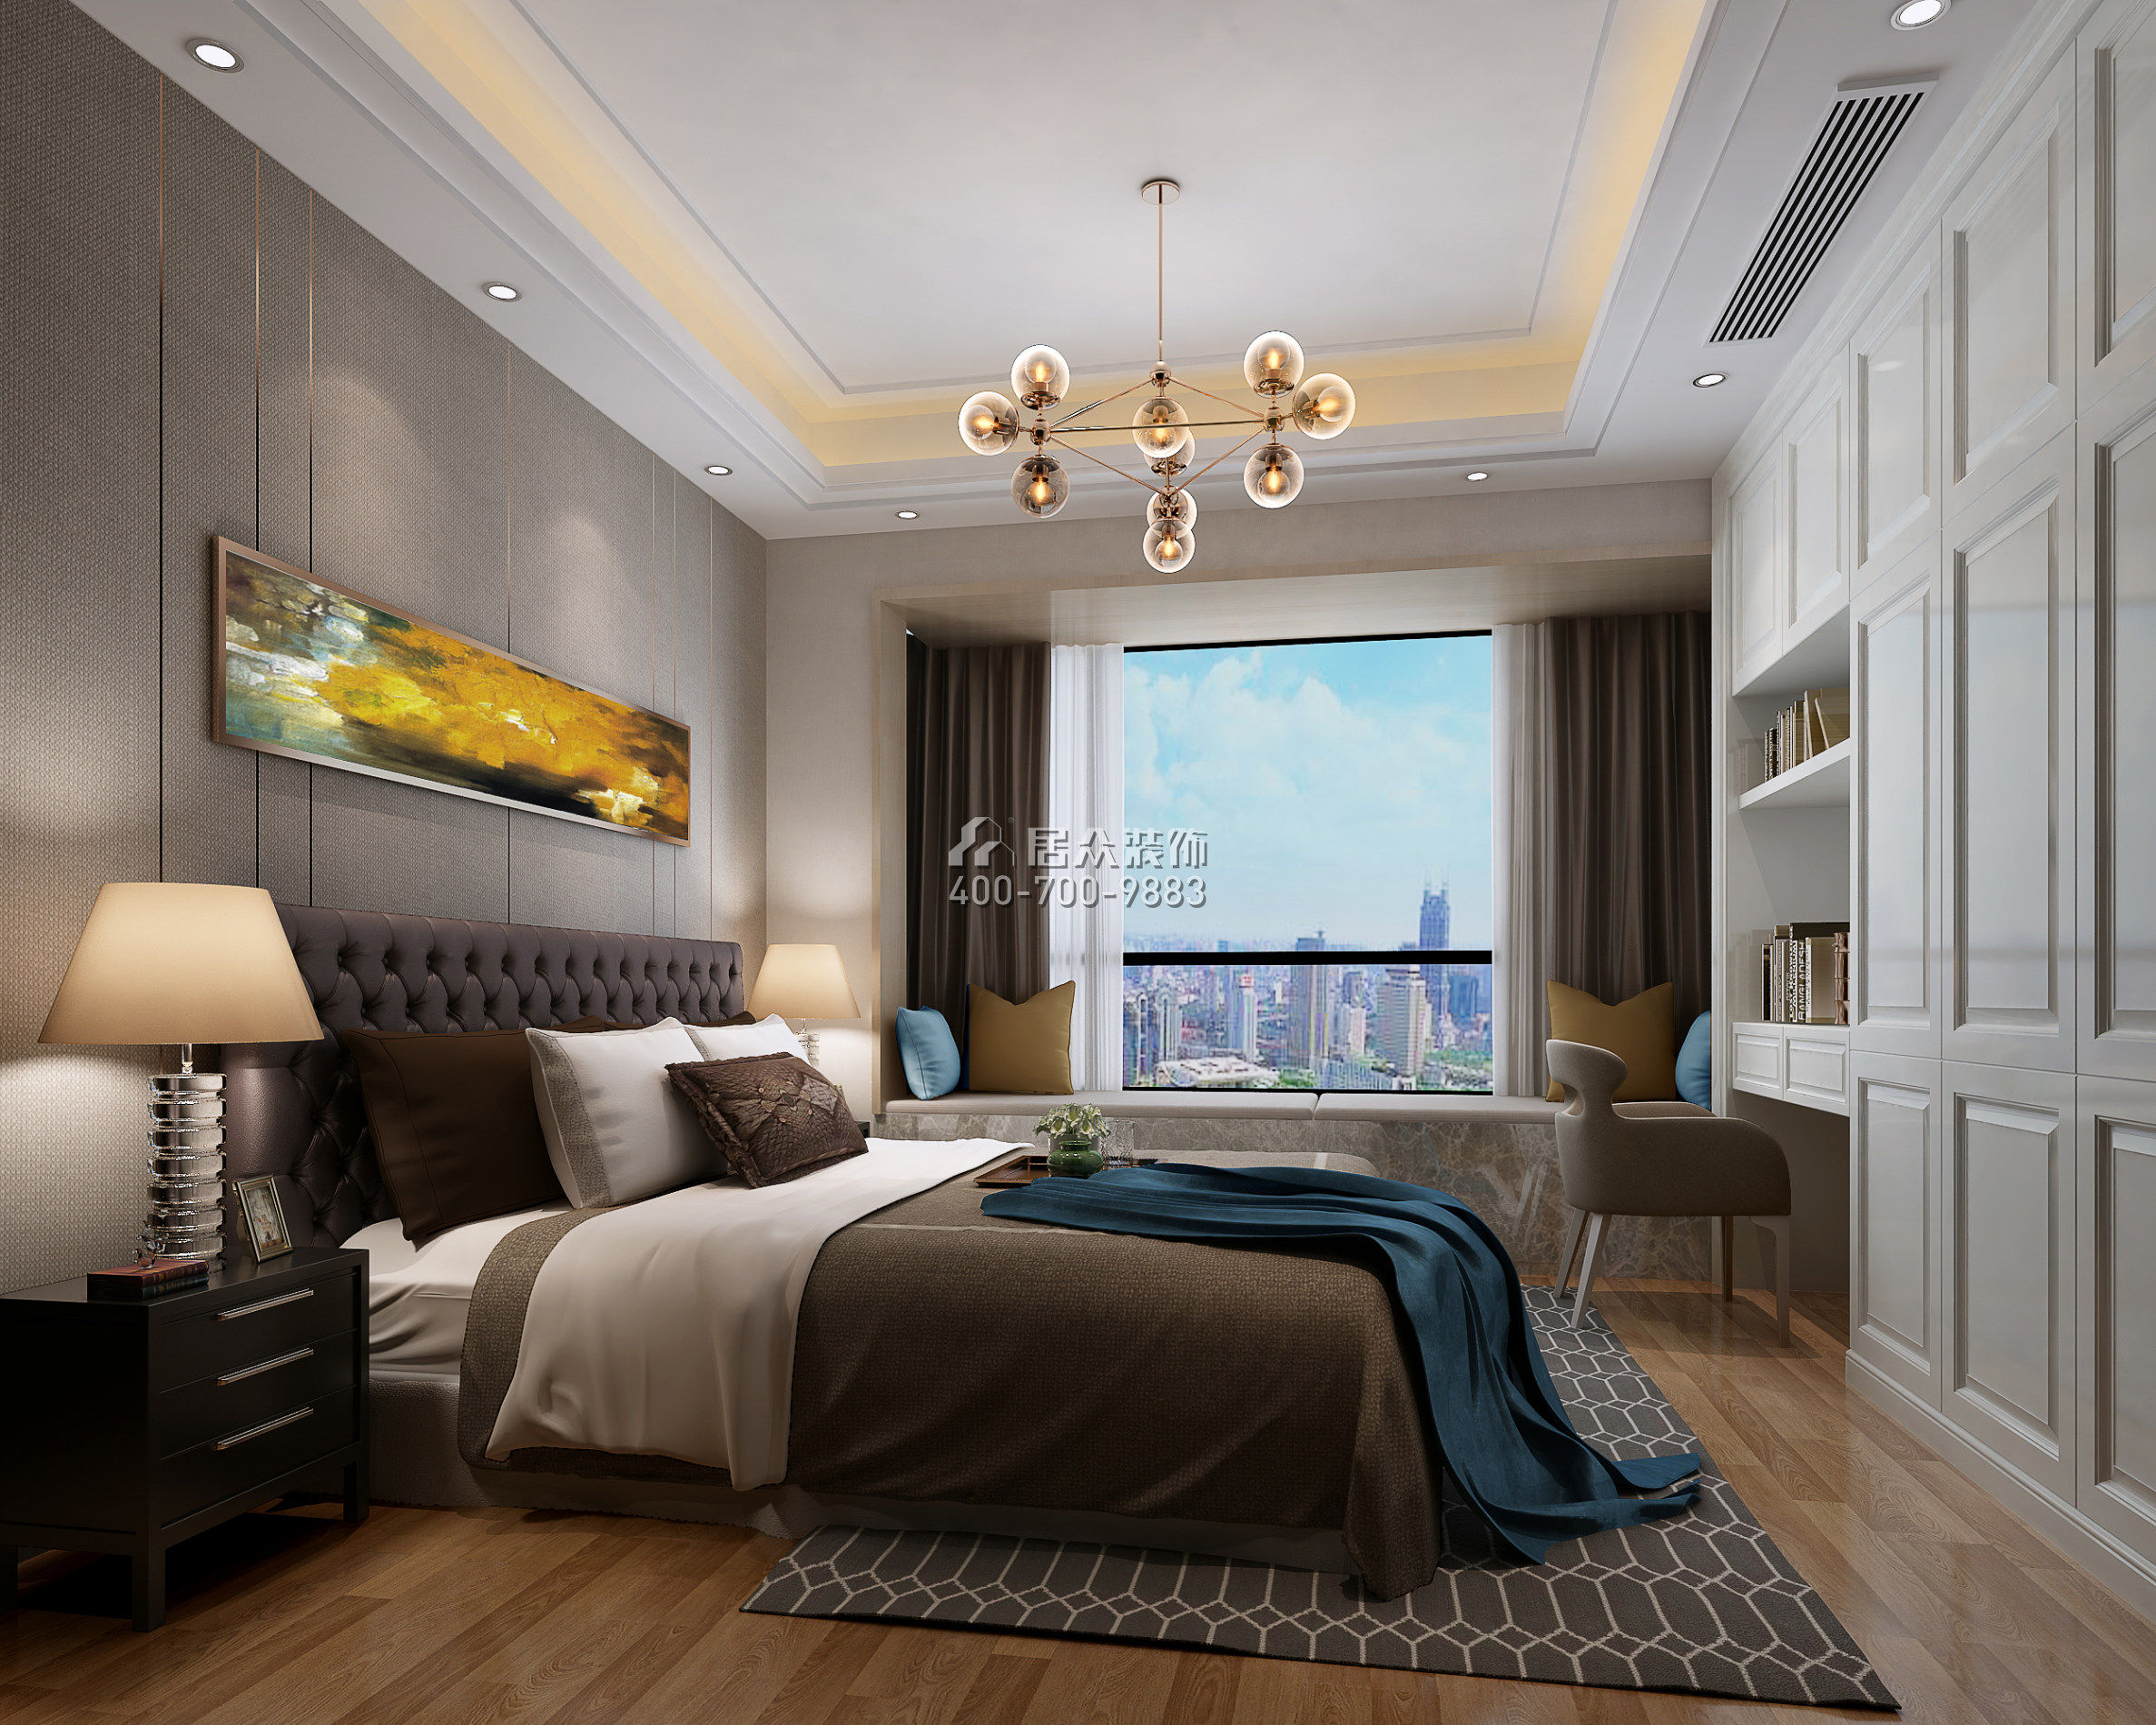 龙瑞佳园144平方米现代简约风格平层户型卧室装修效果图